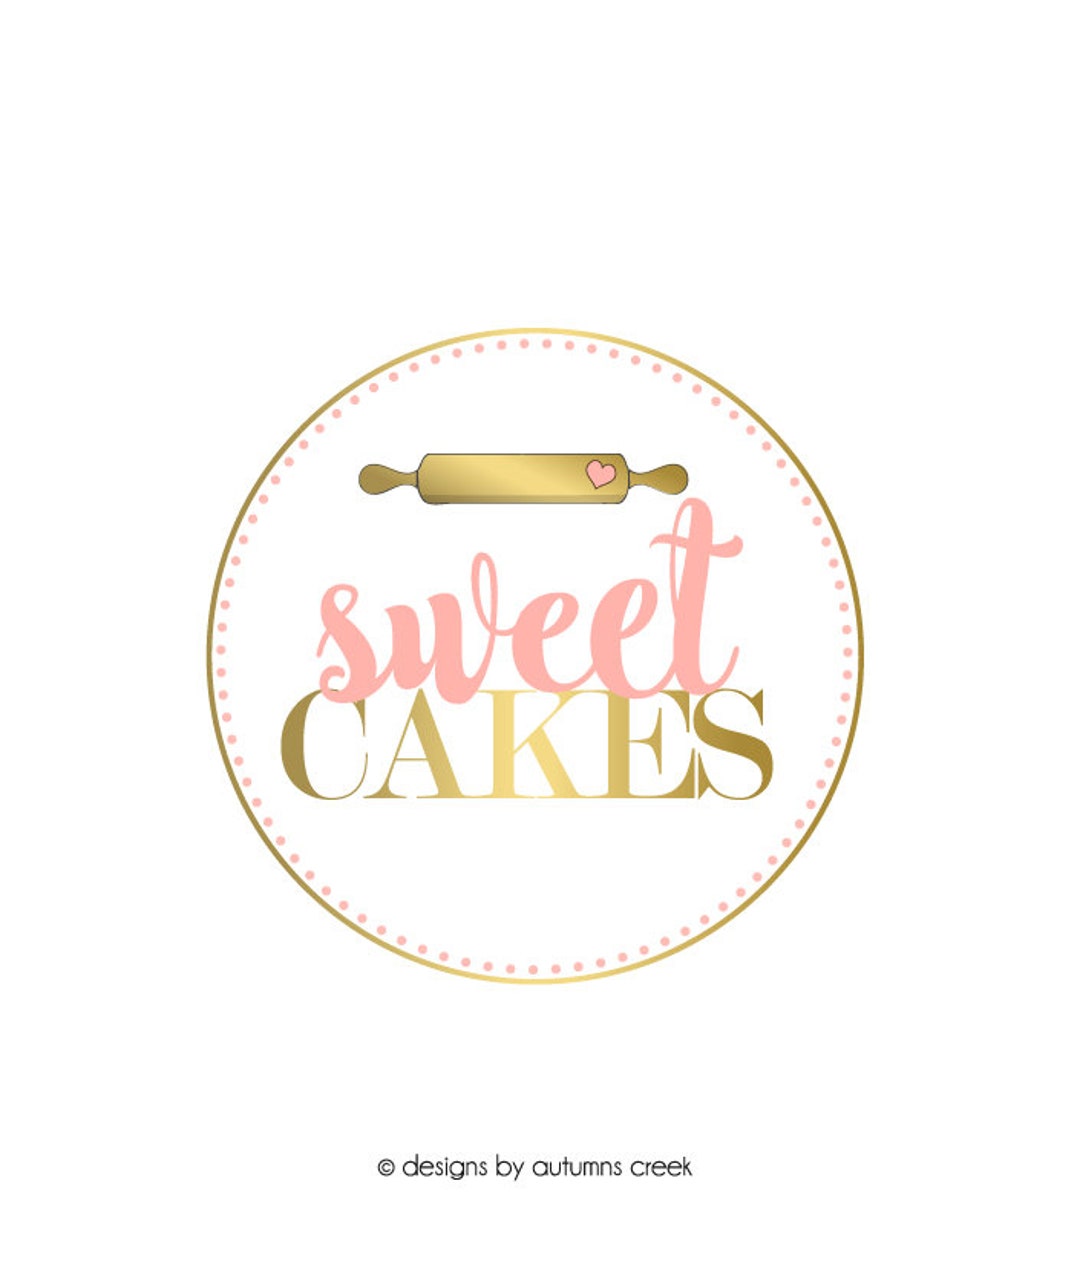 Créer un logo pour un rouleau à pâtisserie en ligne avec Logo Creator Free